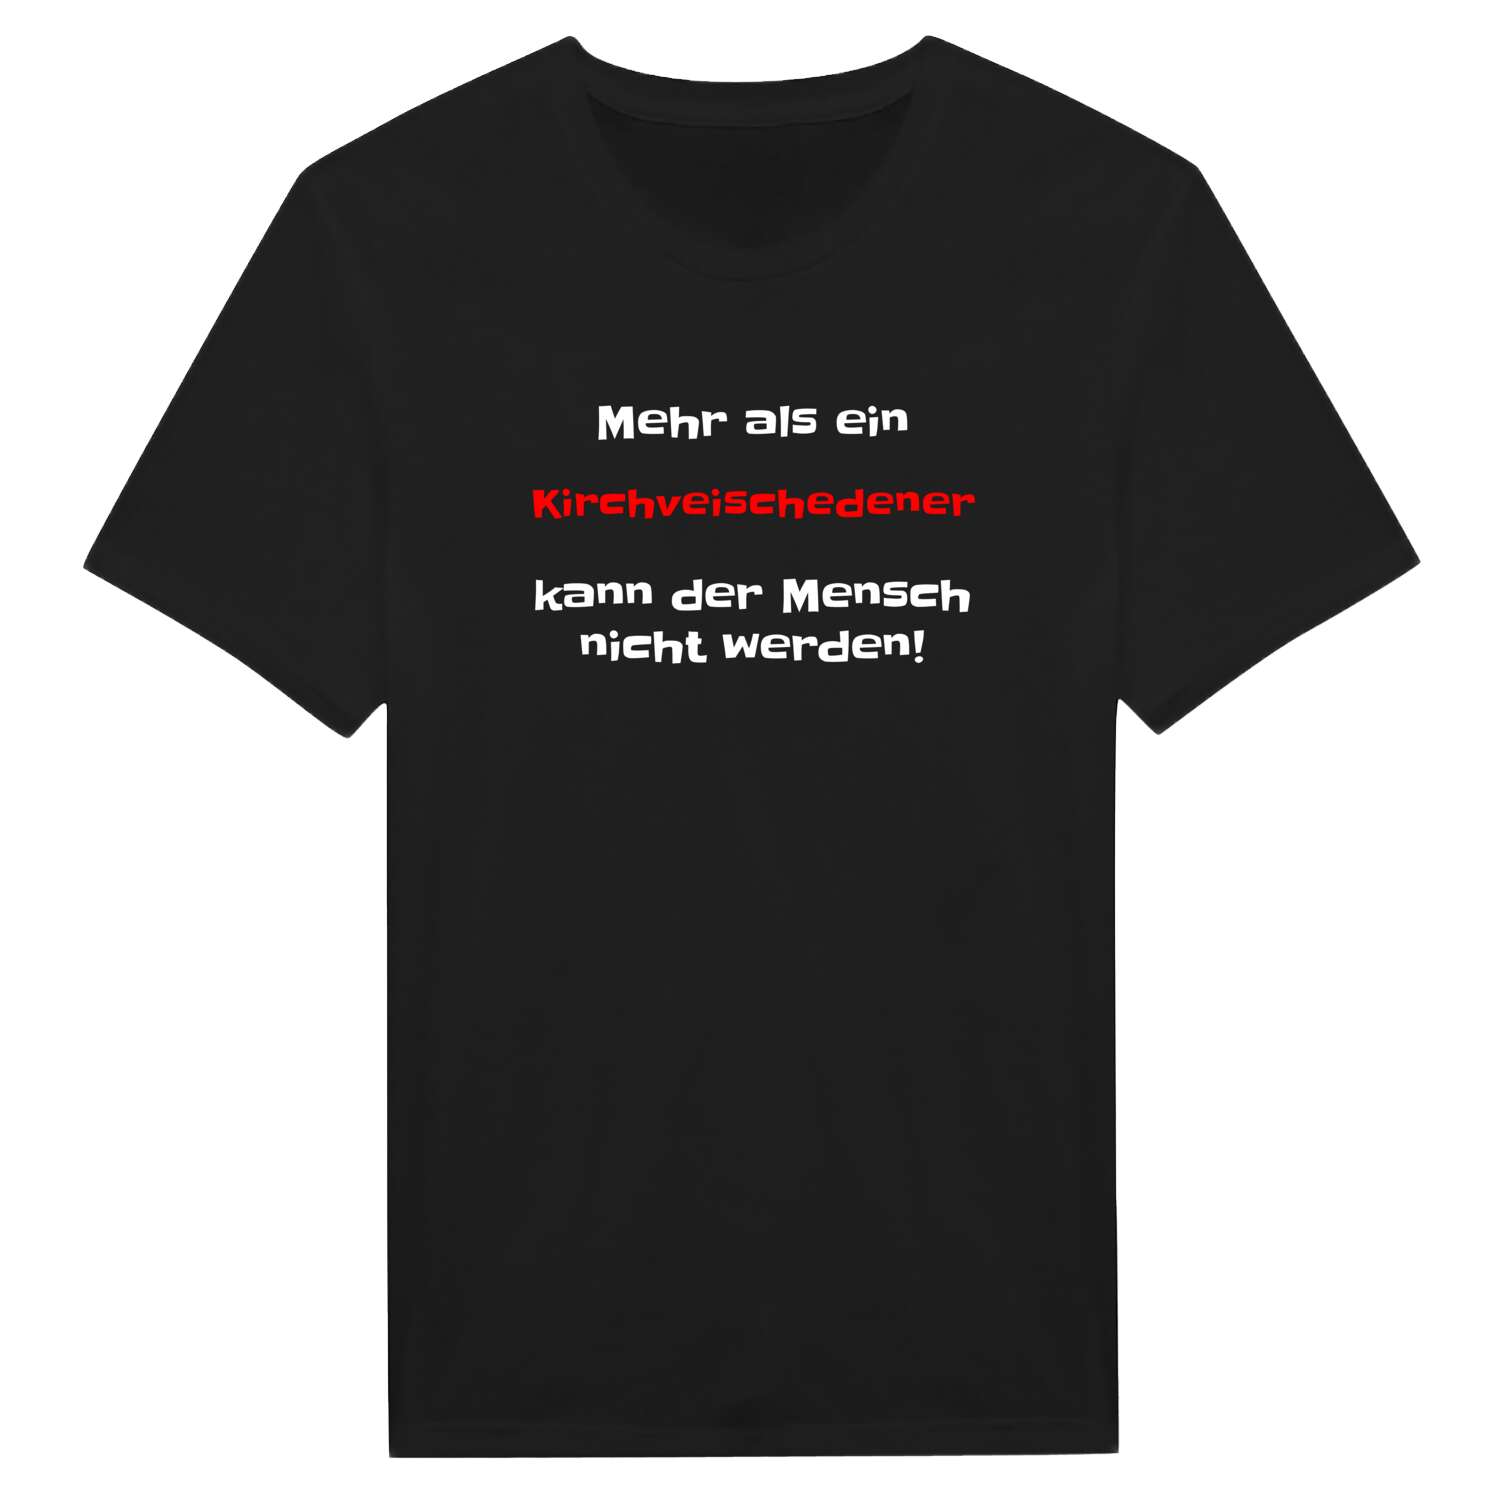 Kirchveischede T-Shirt »Mehr als ein«